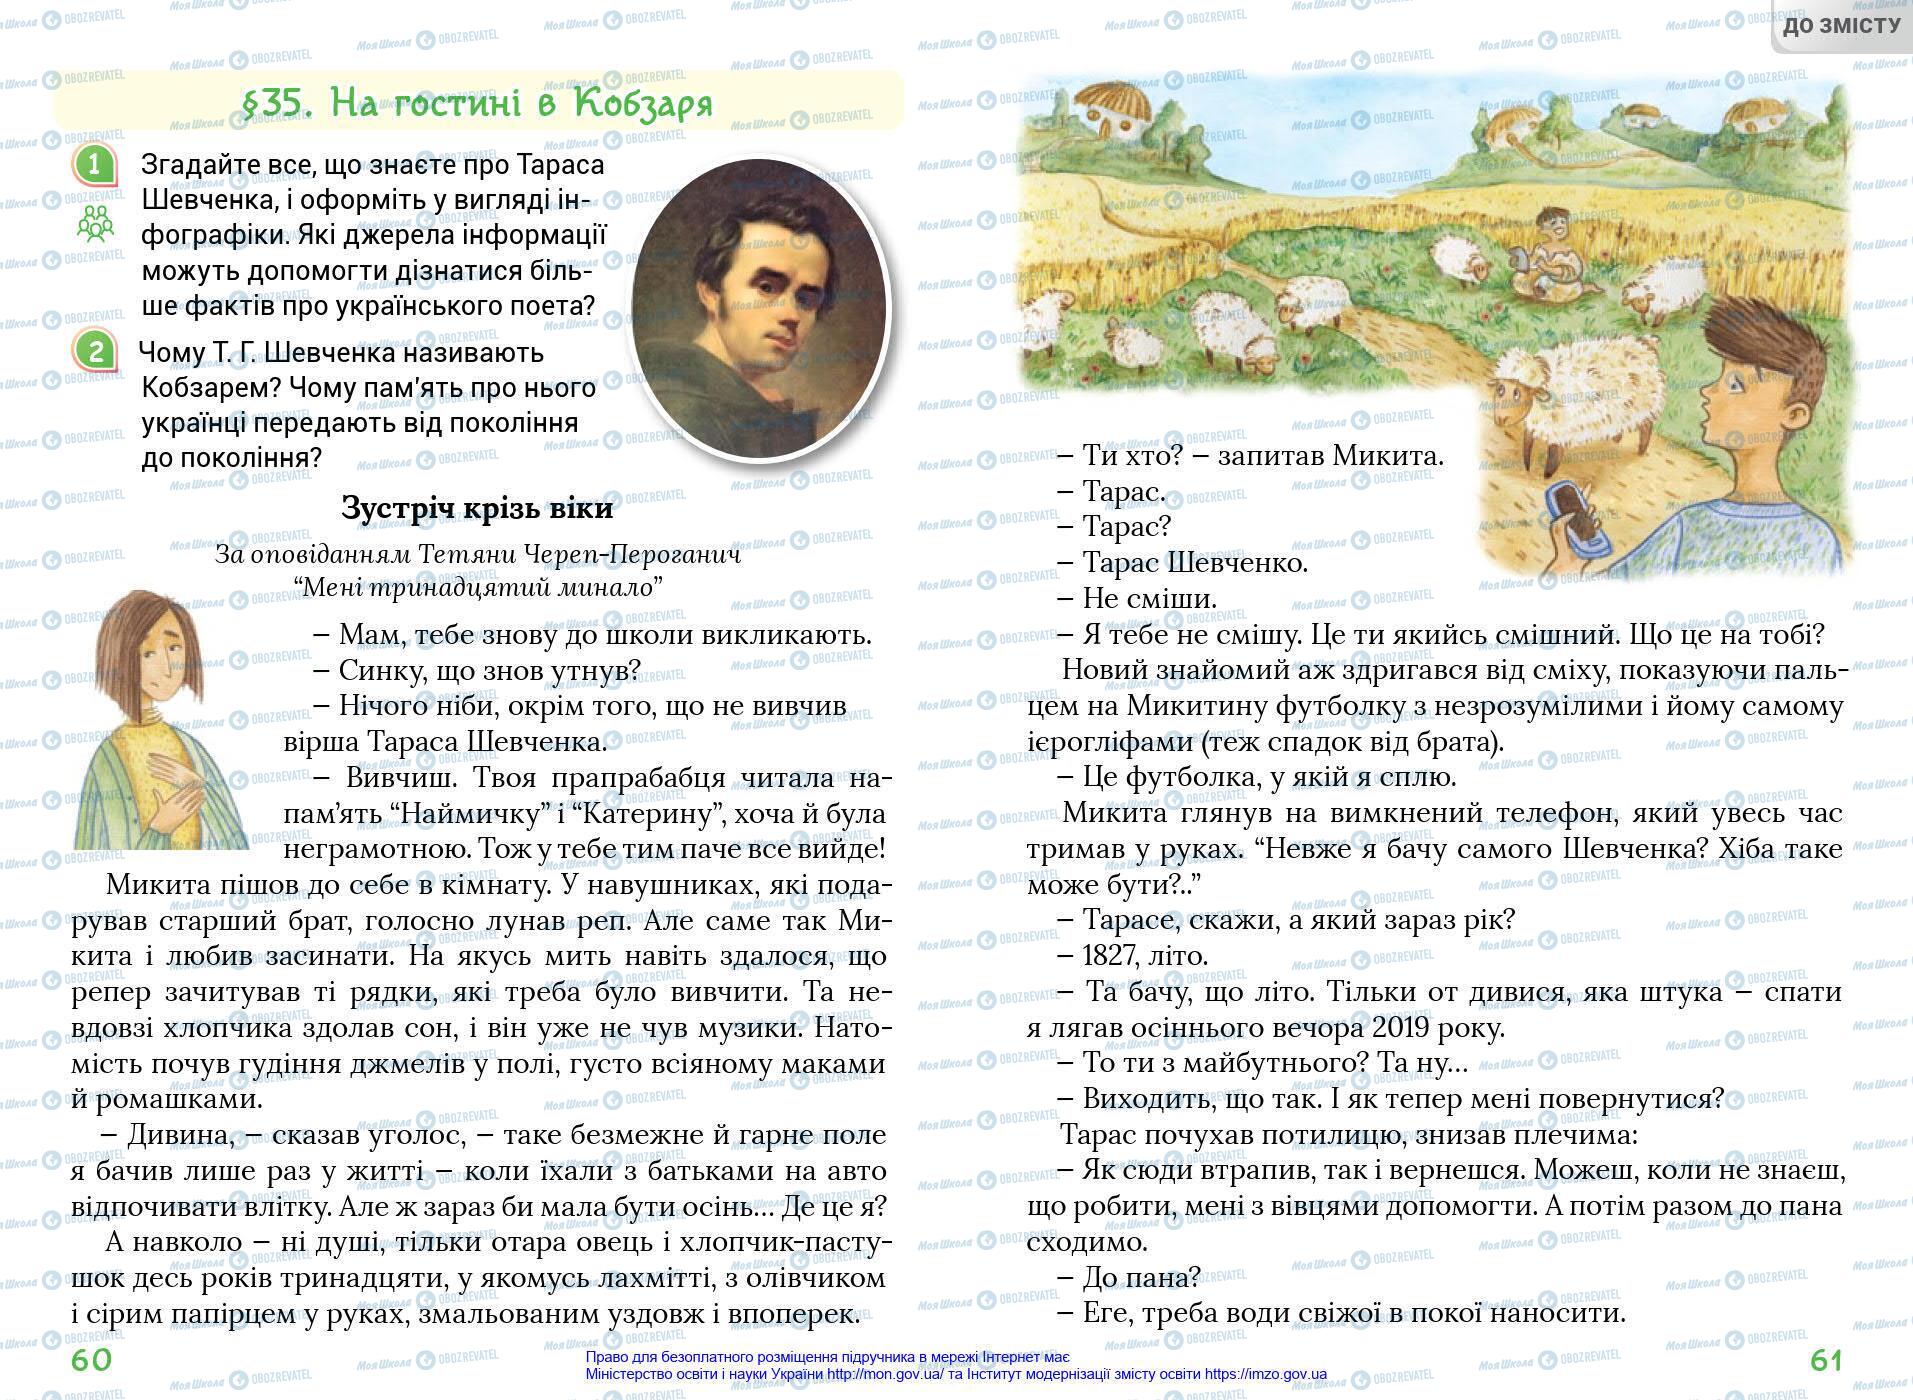 Підручники Українська мова 4 клас сторінка 60-61